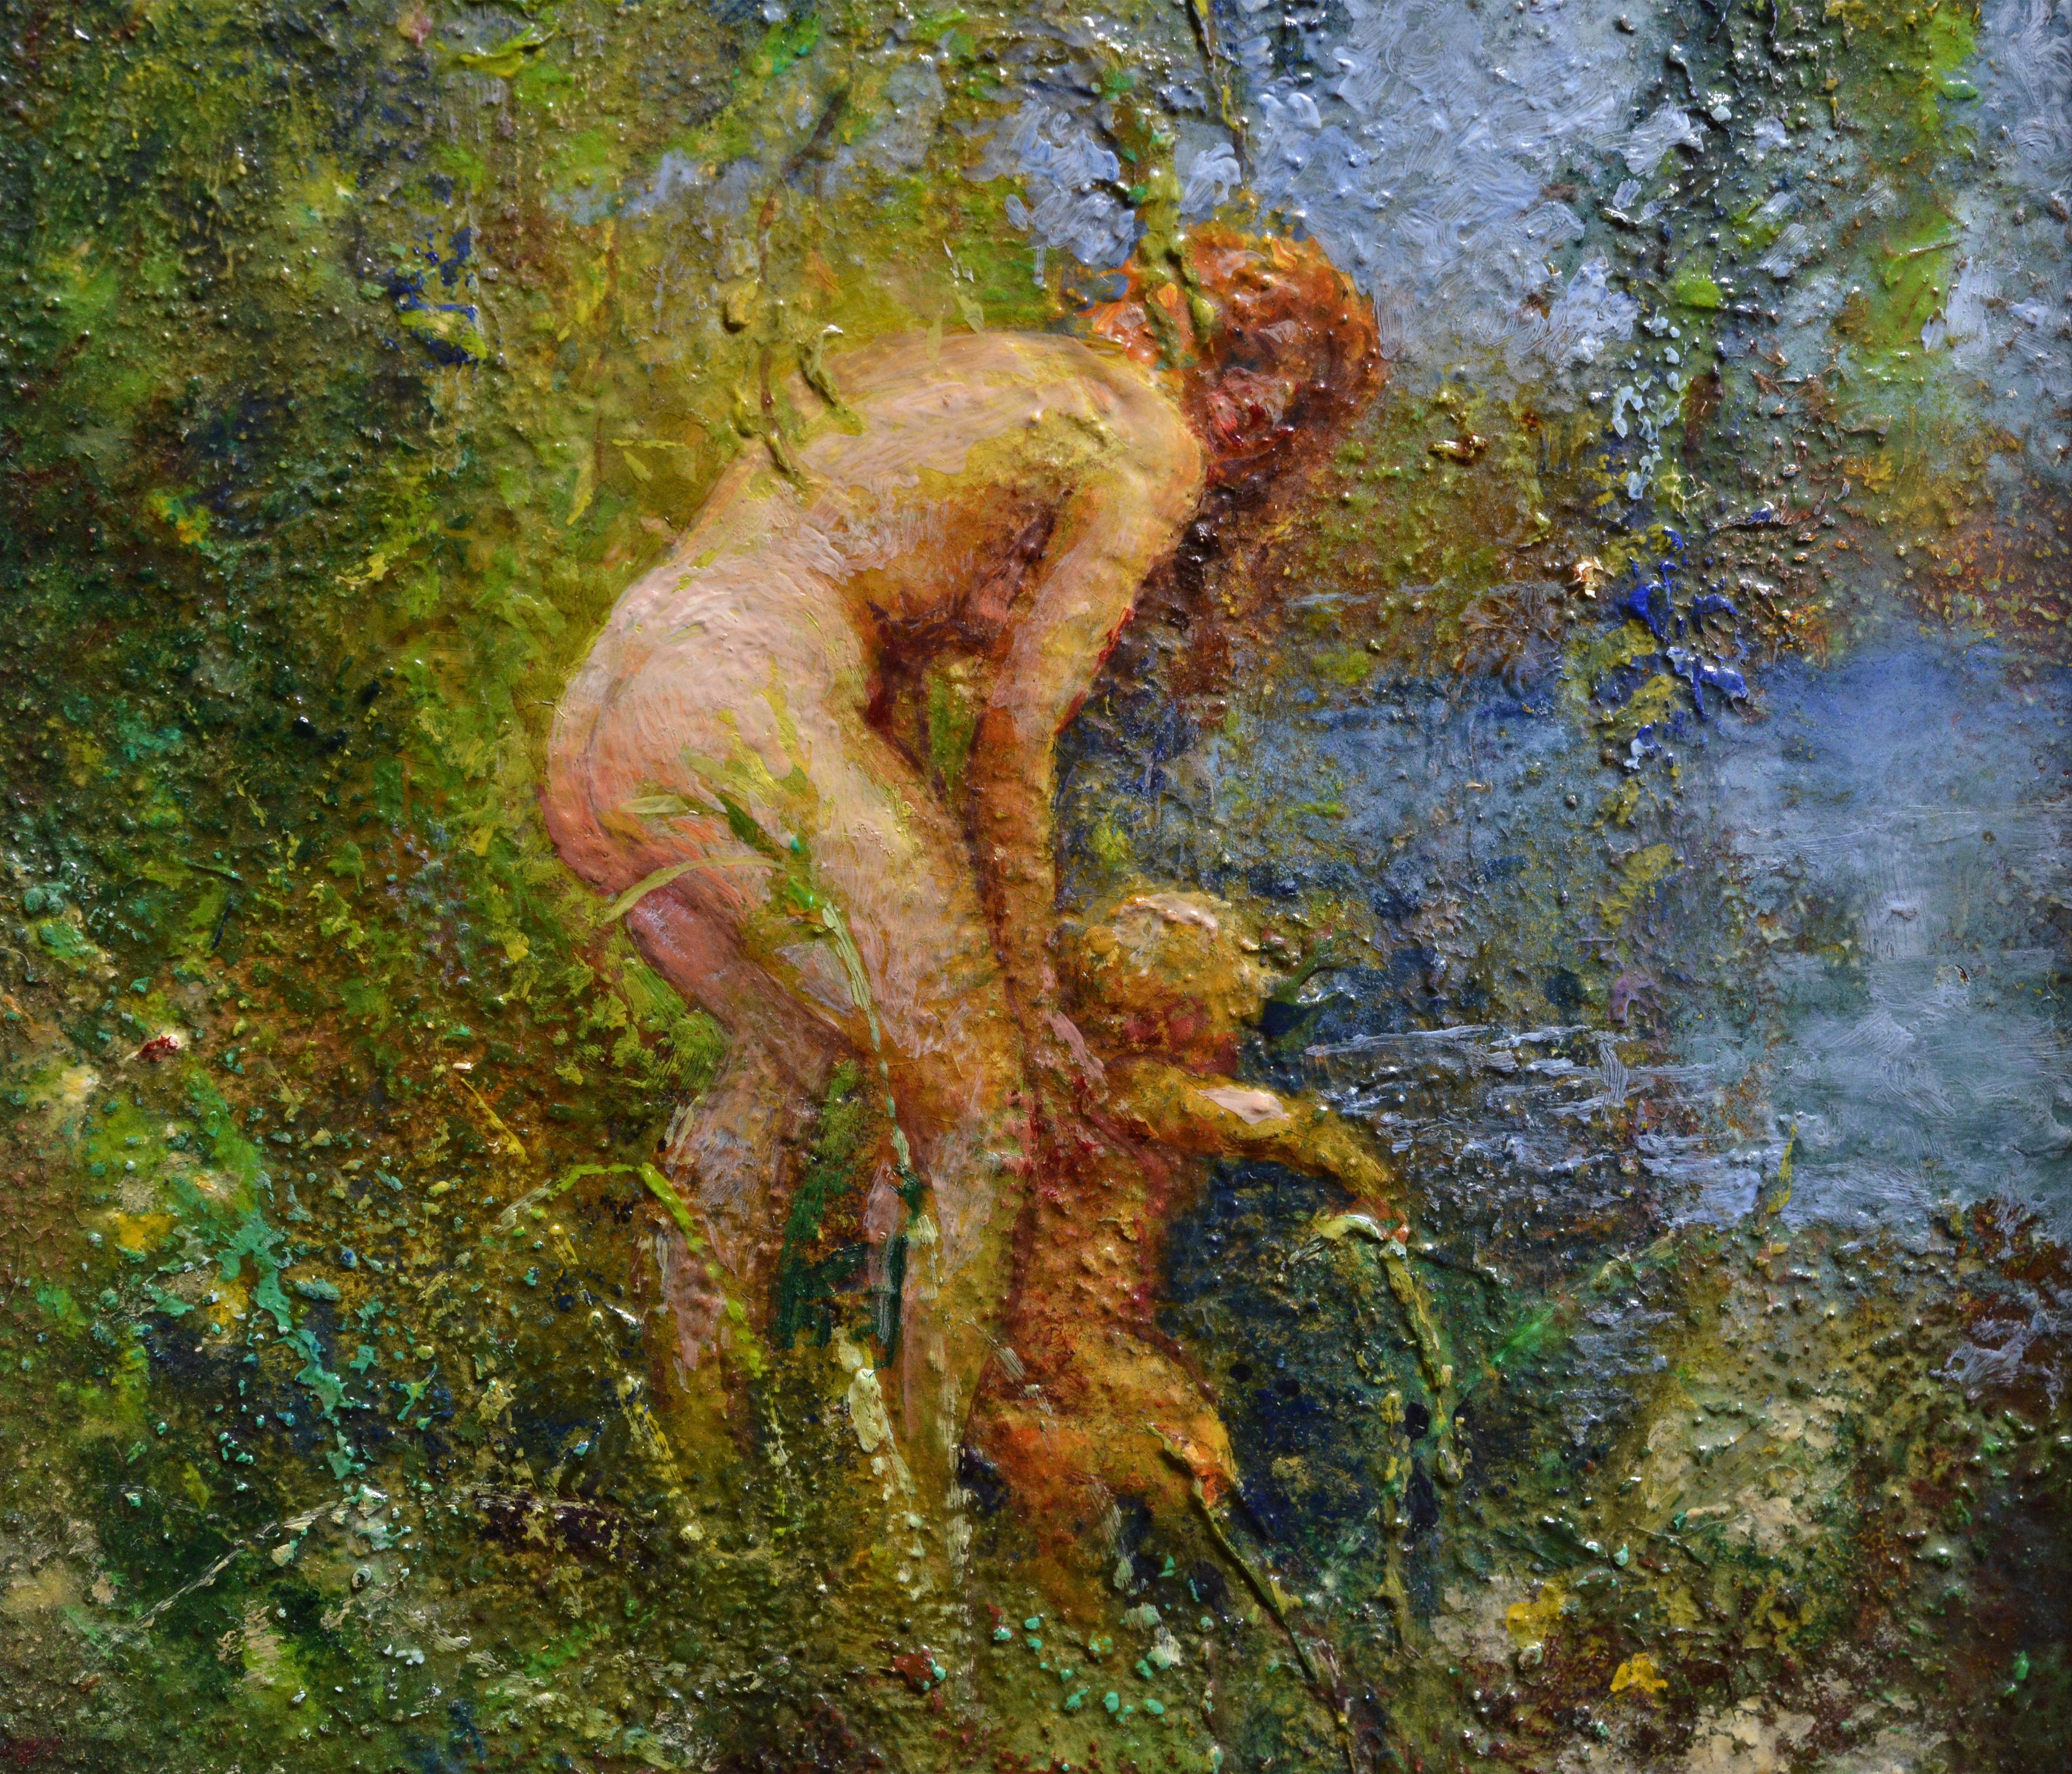 Frau im Fluss badet Kind, ca. 1932, Ölgemälde des schwedischen Meisters Widholm (Impressionismus), Painting, von Ernst Gunnar Widholm